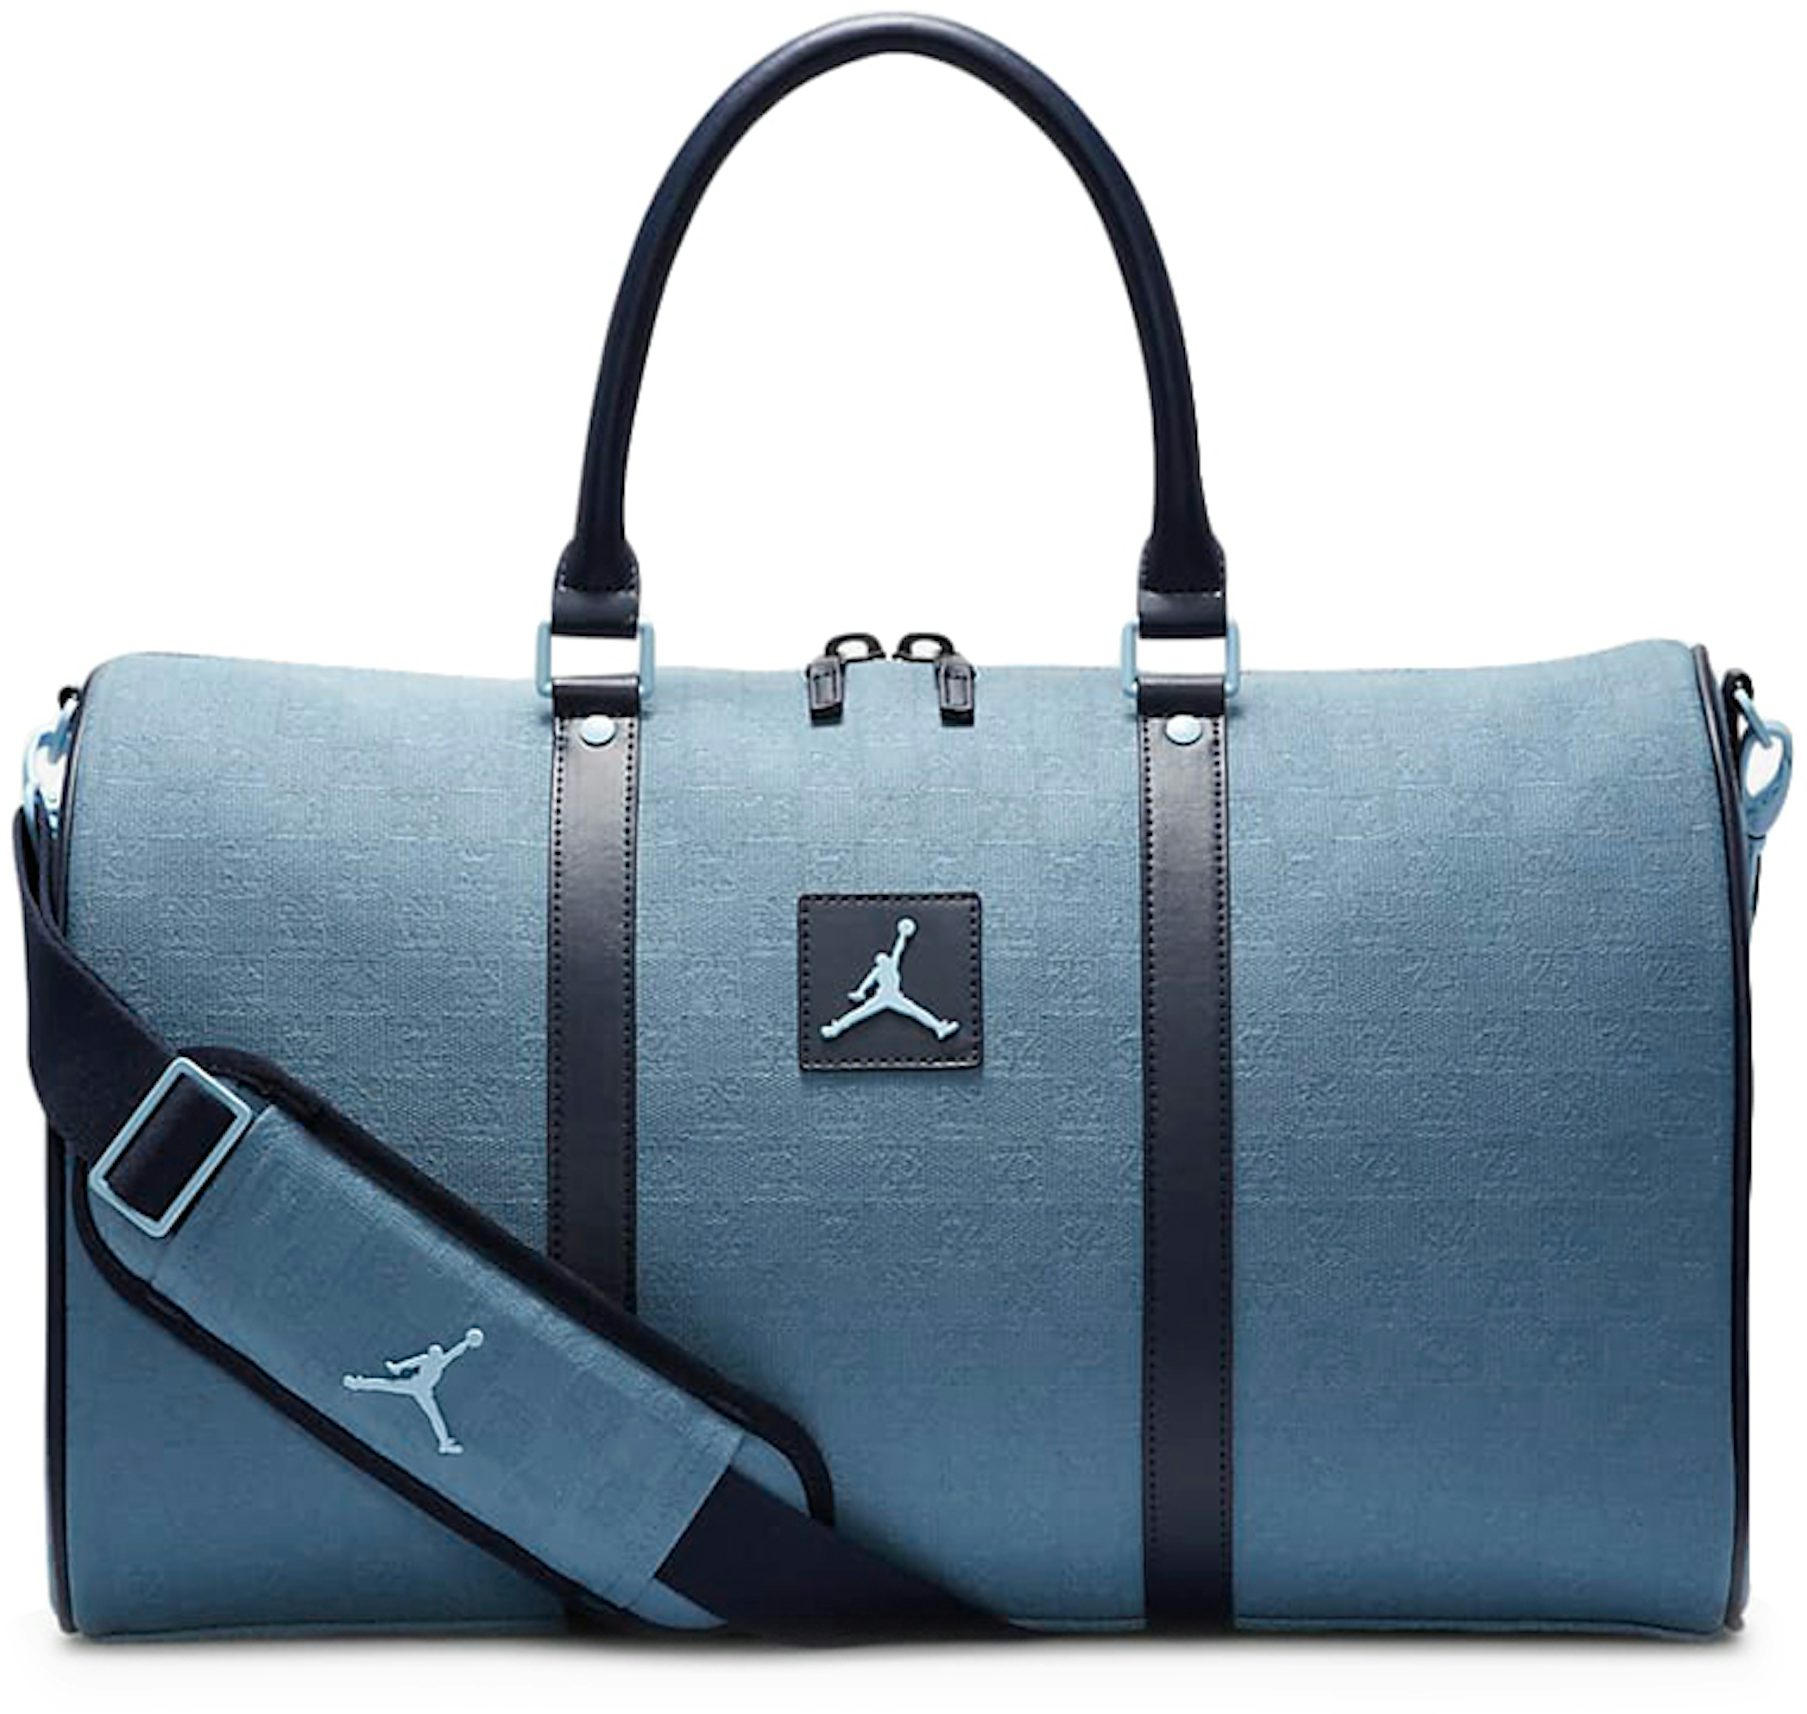 Jordan Monogram Duffel Bag (25L) in Blue